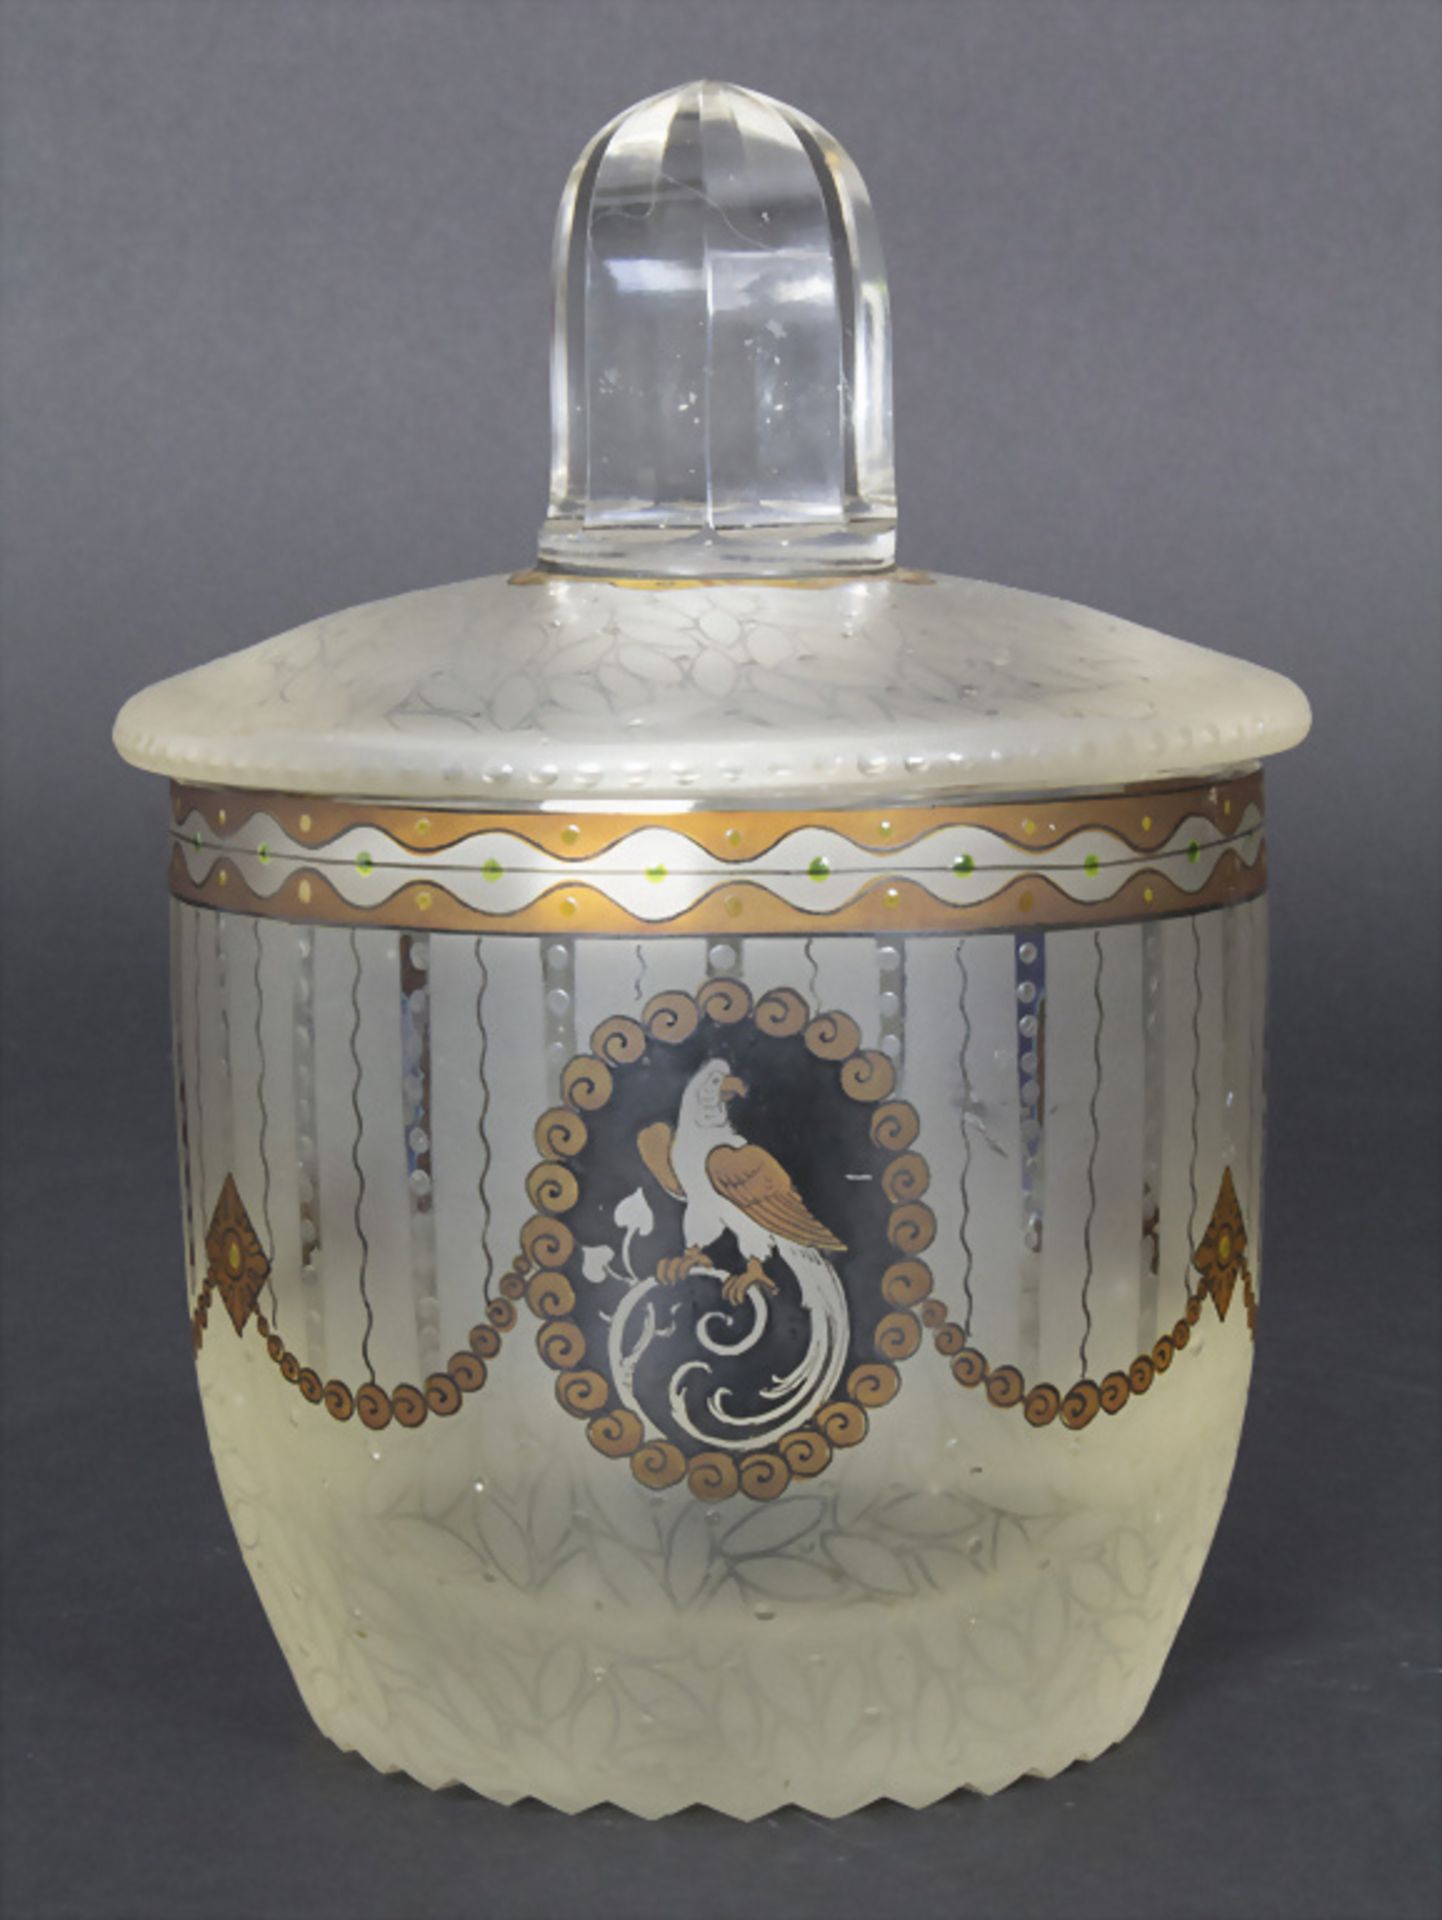 Jugendstil Deckelgefäß mit Transparentemaildekor / An Art Nouveau covered bowl with ... - Image 4 of 6